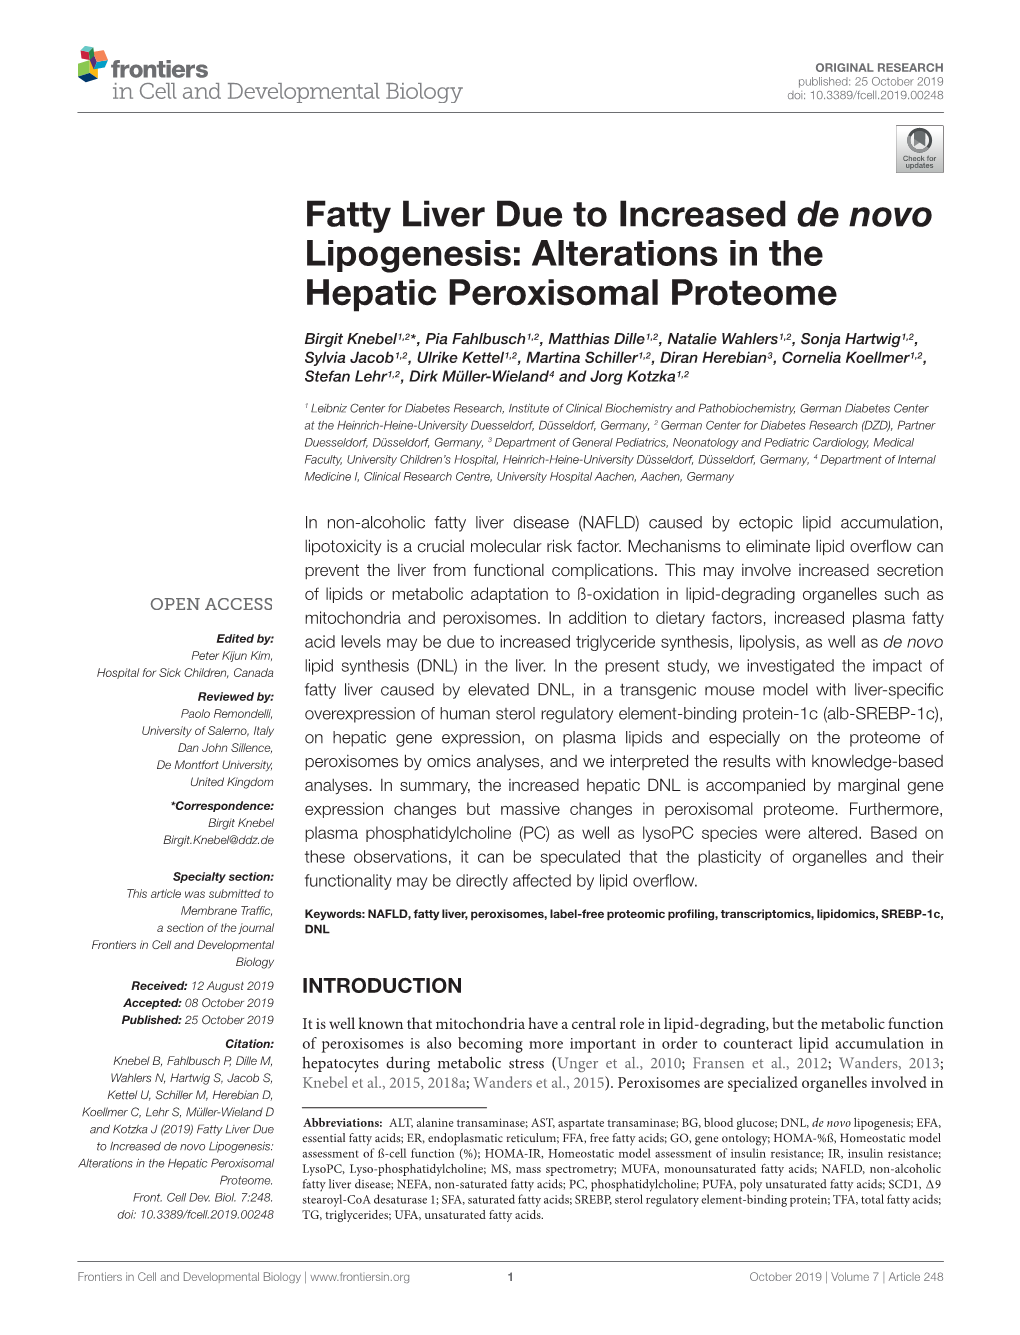 Fatty Liver Due to Increased De Novo Lipogenesis: Alterations in the Hepatic Peroxisomal Proteome